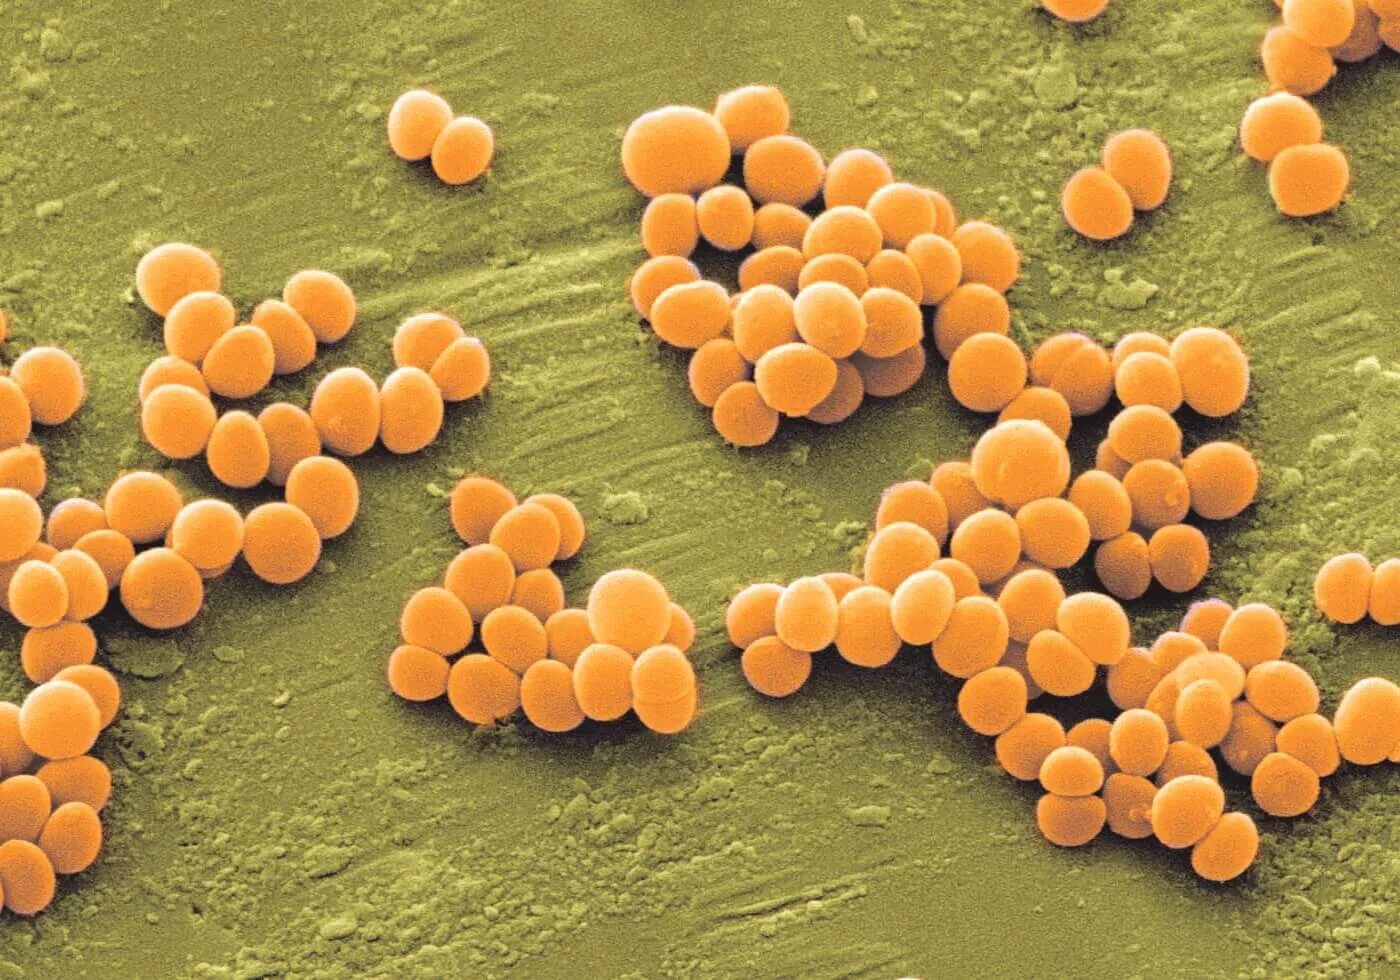 Staphylococcus aureus 4. S. aureus золотистый стафилококк. Стафилококк золотистый Staphylococcus aureus. Метициллин-устойчивый золотистый стафилококк. Стафилококки сапрофиты.